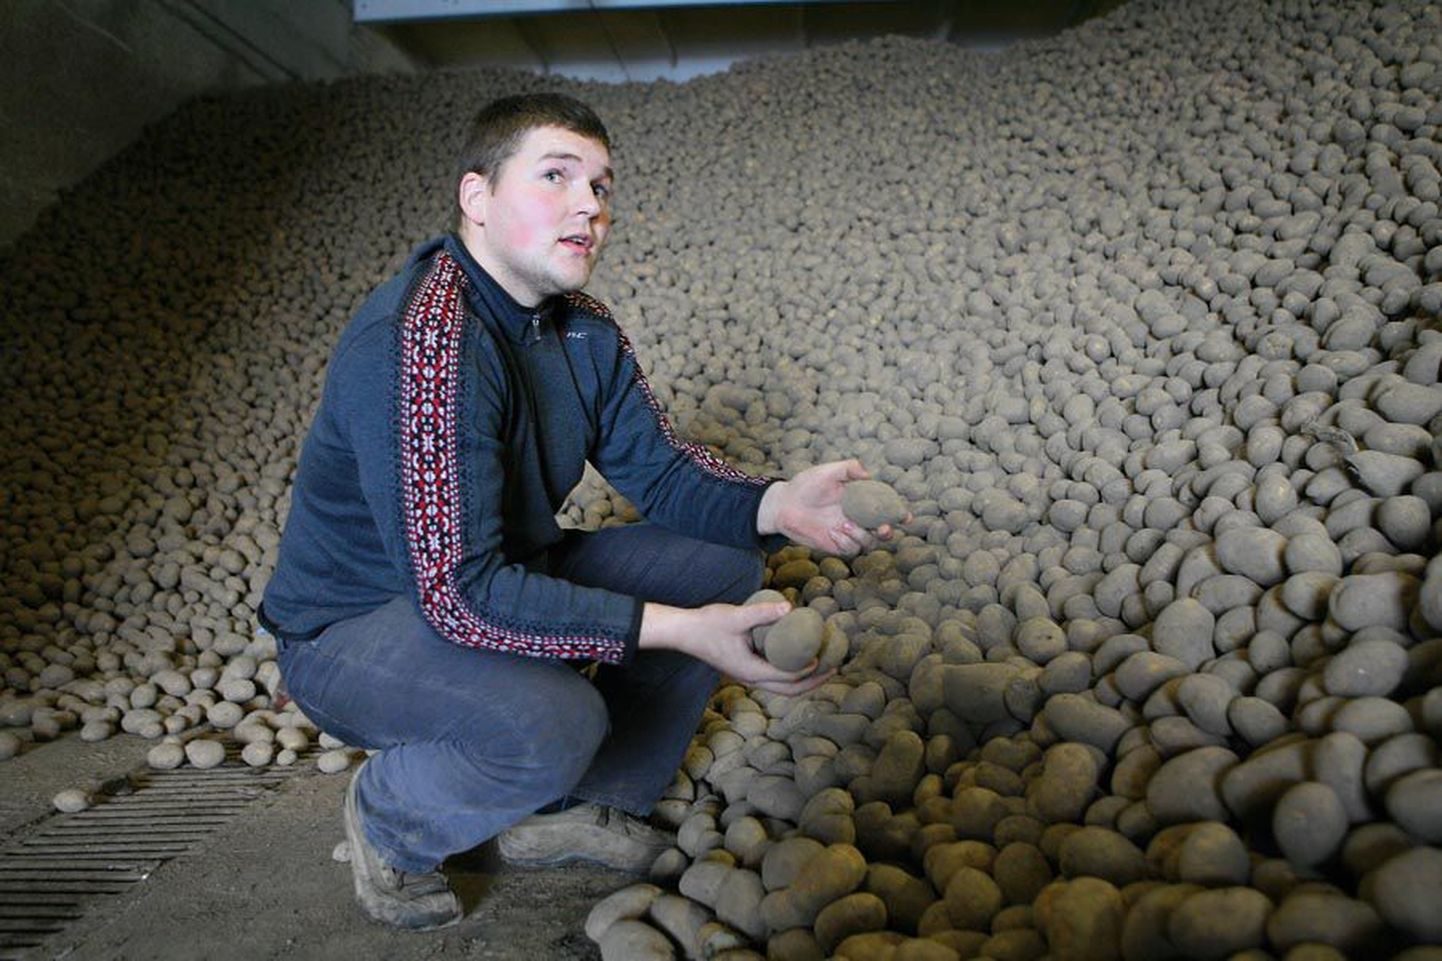 Osaühingu Westi Kartul juhatuse liige ja tegevjuht Maido Saarman usub, et kodumaist kartulit Eestis uue saagini ei jagu. Praegu on tal mullusest saagist alles vaid kümnendik. Liigniiskuse tõttu jäi põllule neli hektarit kartuleid.